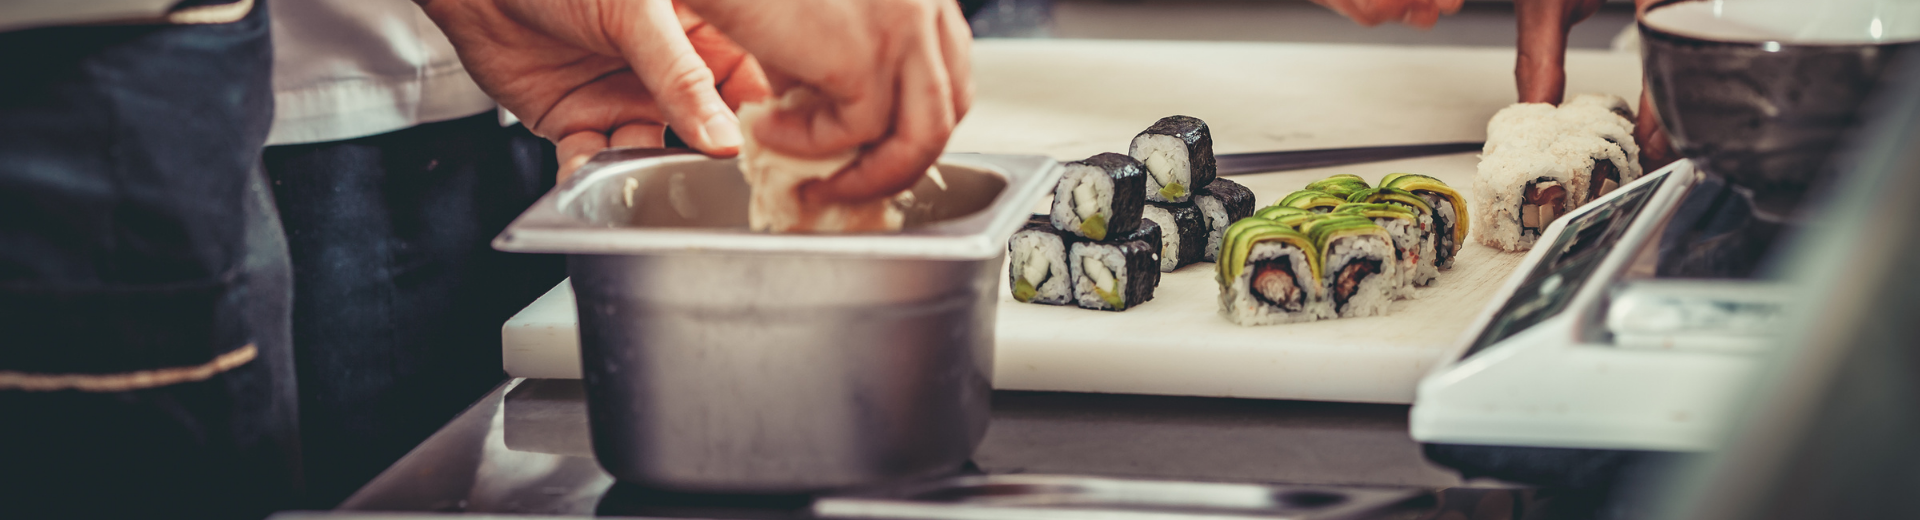 Preparing sushi in restaurant kitchen